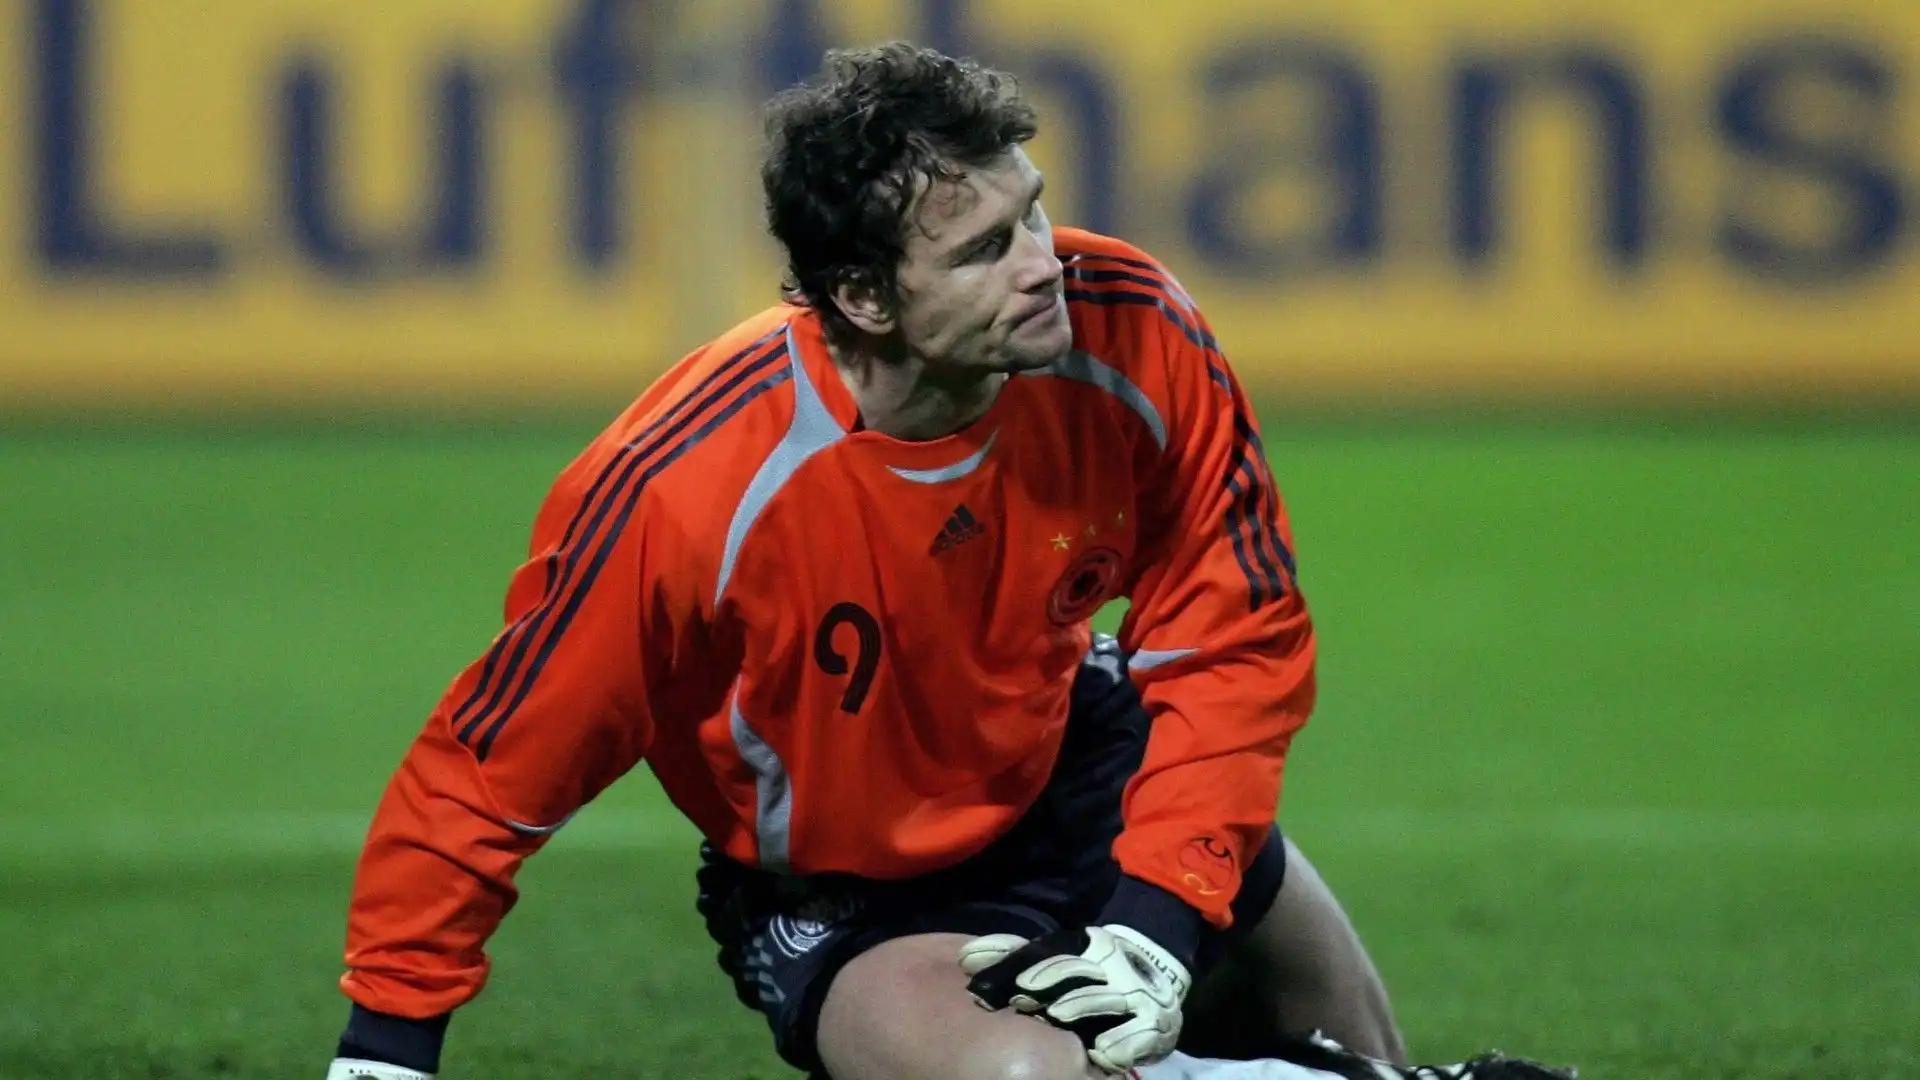 Jens Lehmann - Con lo Schalke ha giocato più di 270 partite. Ha vinto 1 campionato italiano, 1 campionato tedesco, 1 campionato inglese, 1 Coppa d'Inghilterra, 1 Supercoppa d'Inghilterra e 1 Coppa UEFA